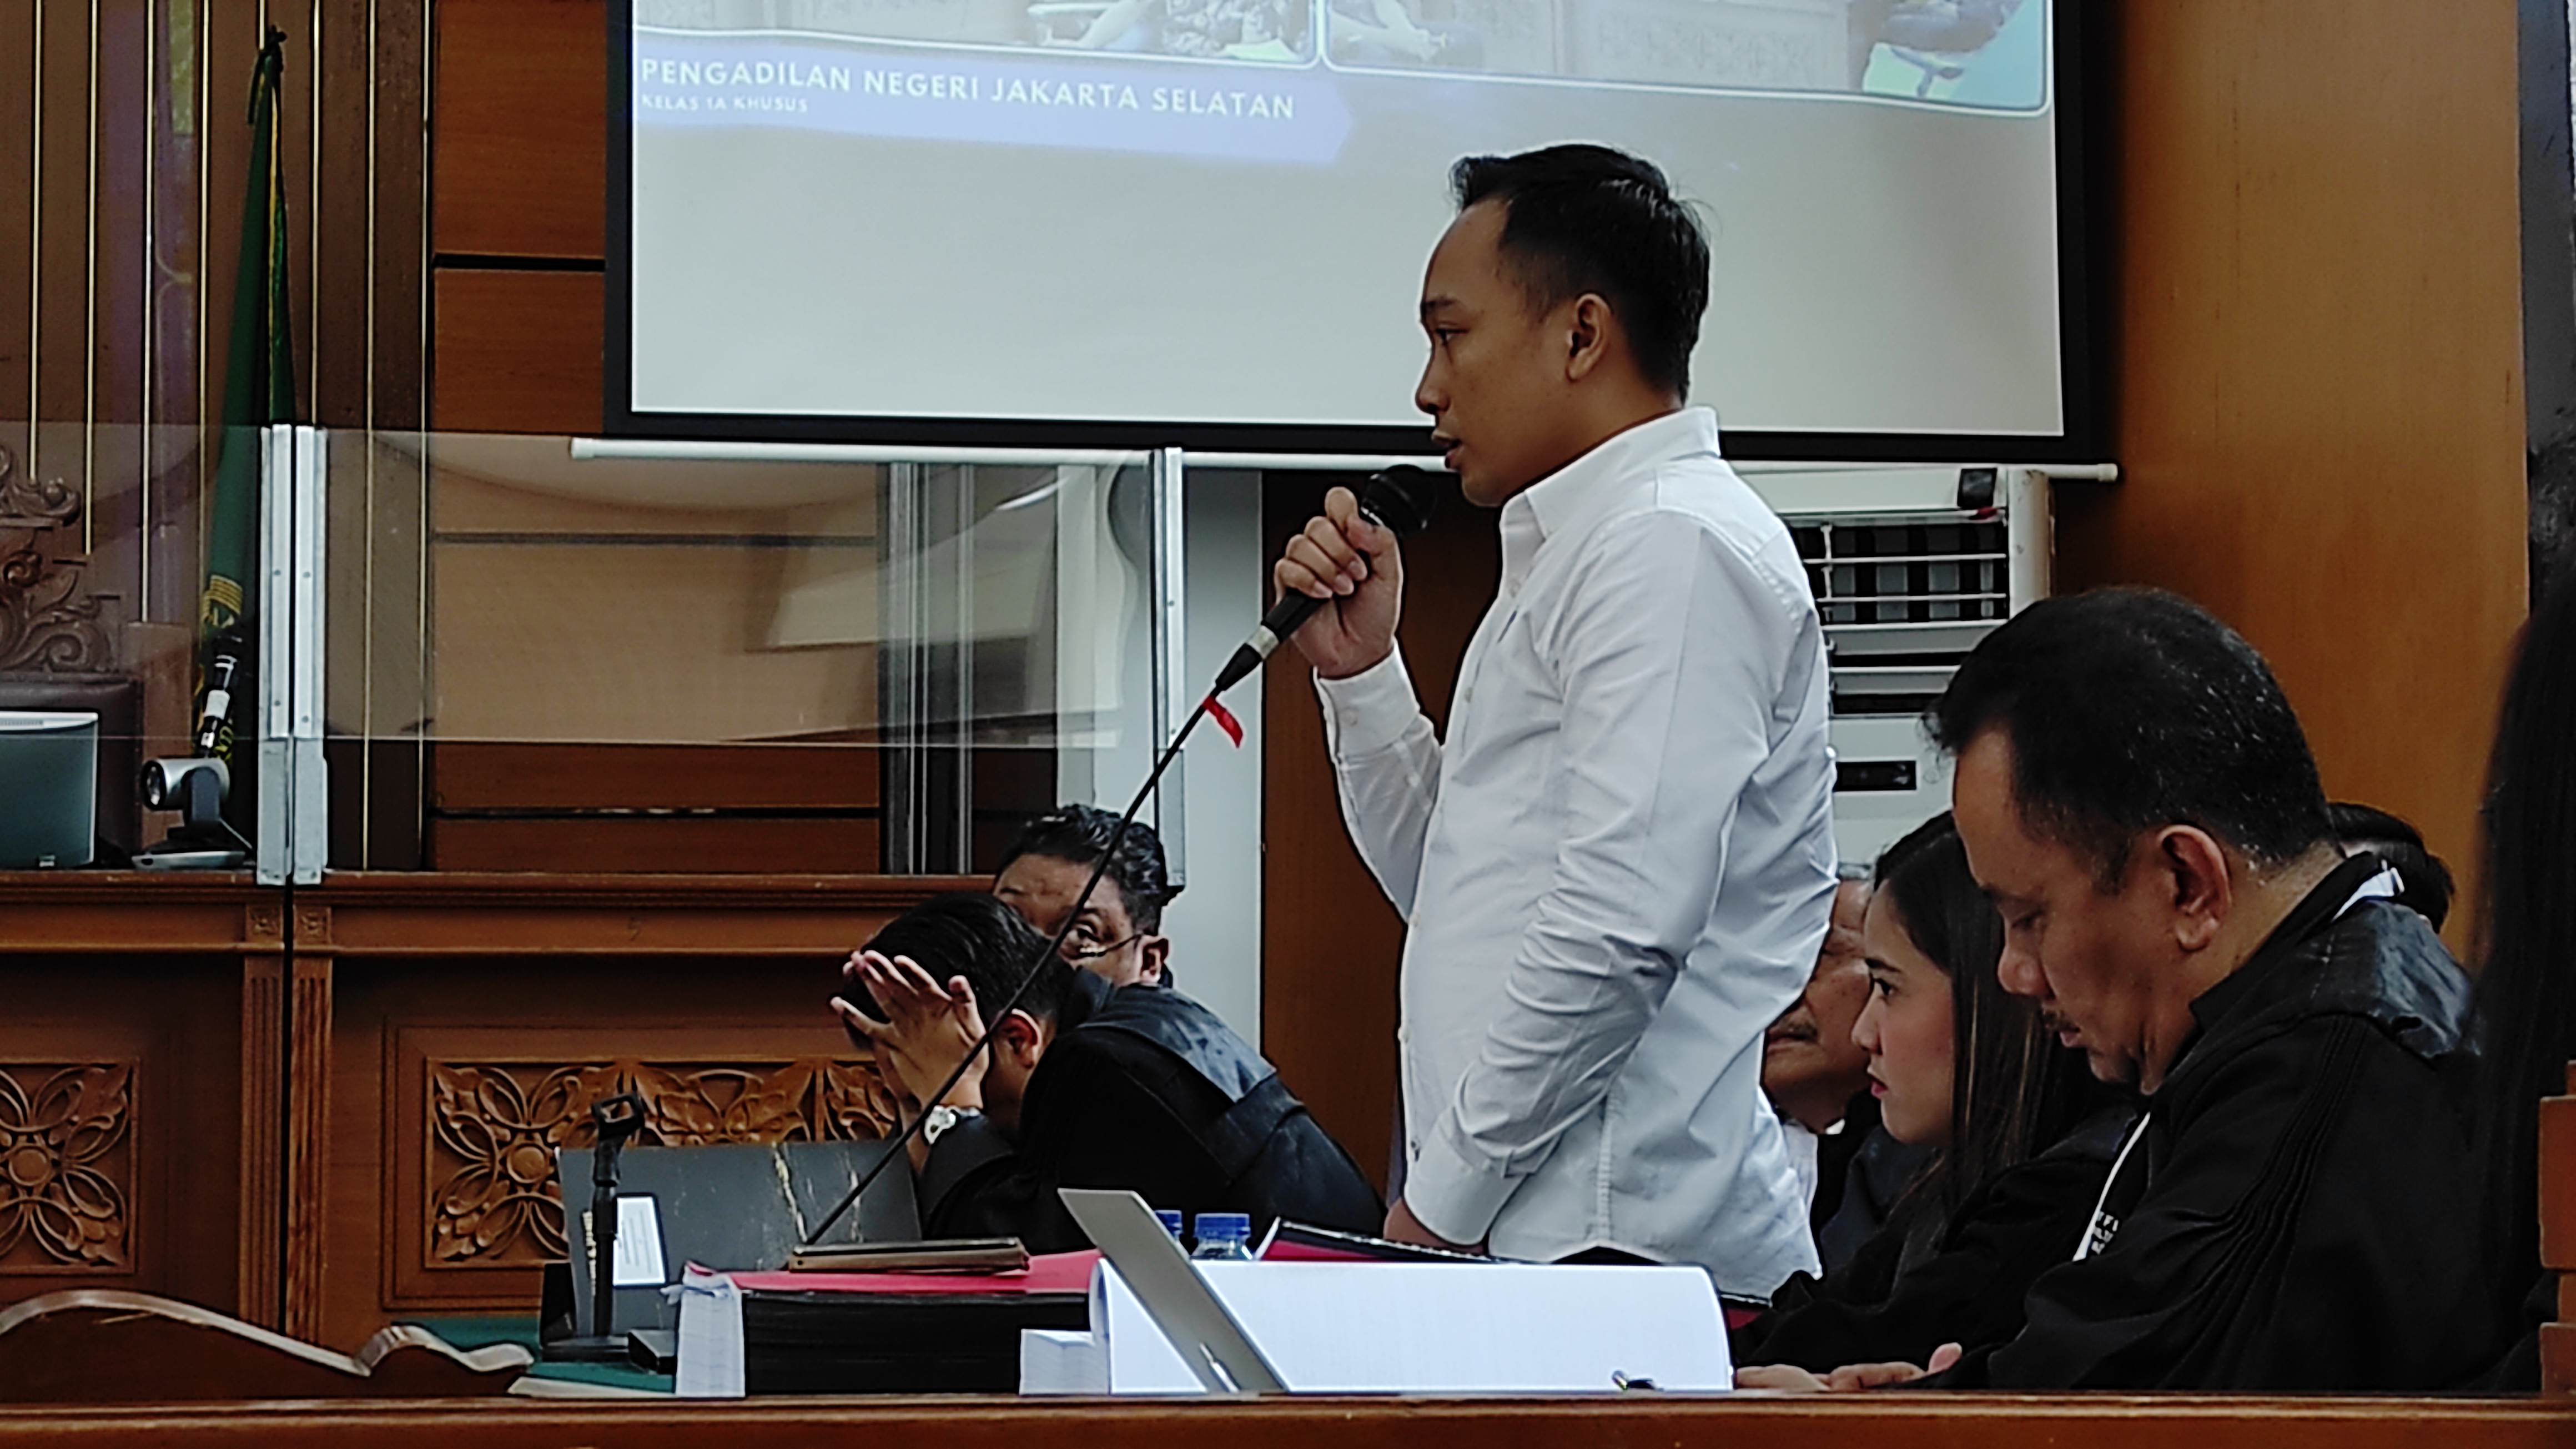 Ricky Rizal Pastikan Kalimat Perintah Ferdy Sambo Sebelum Pembunuhan Brigadir J Terjadi